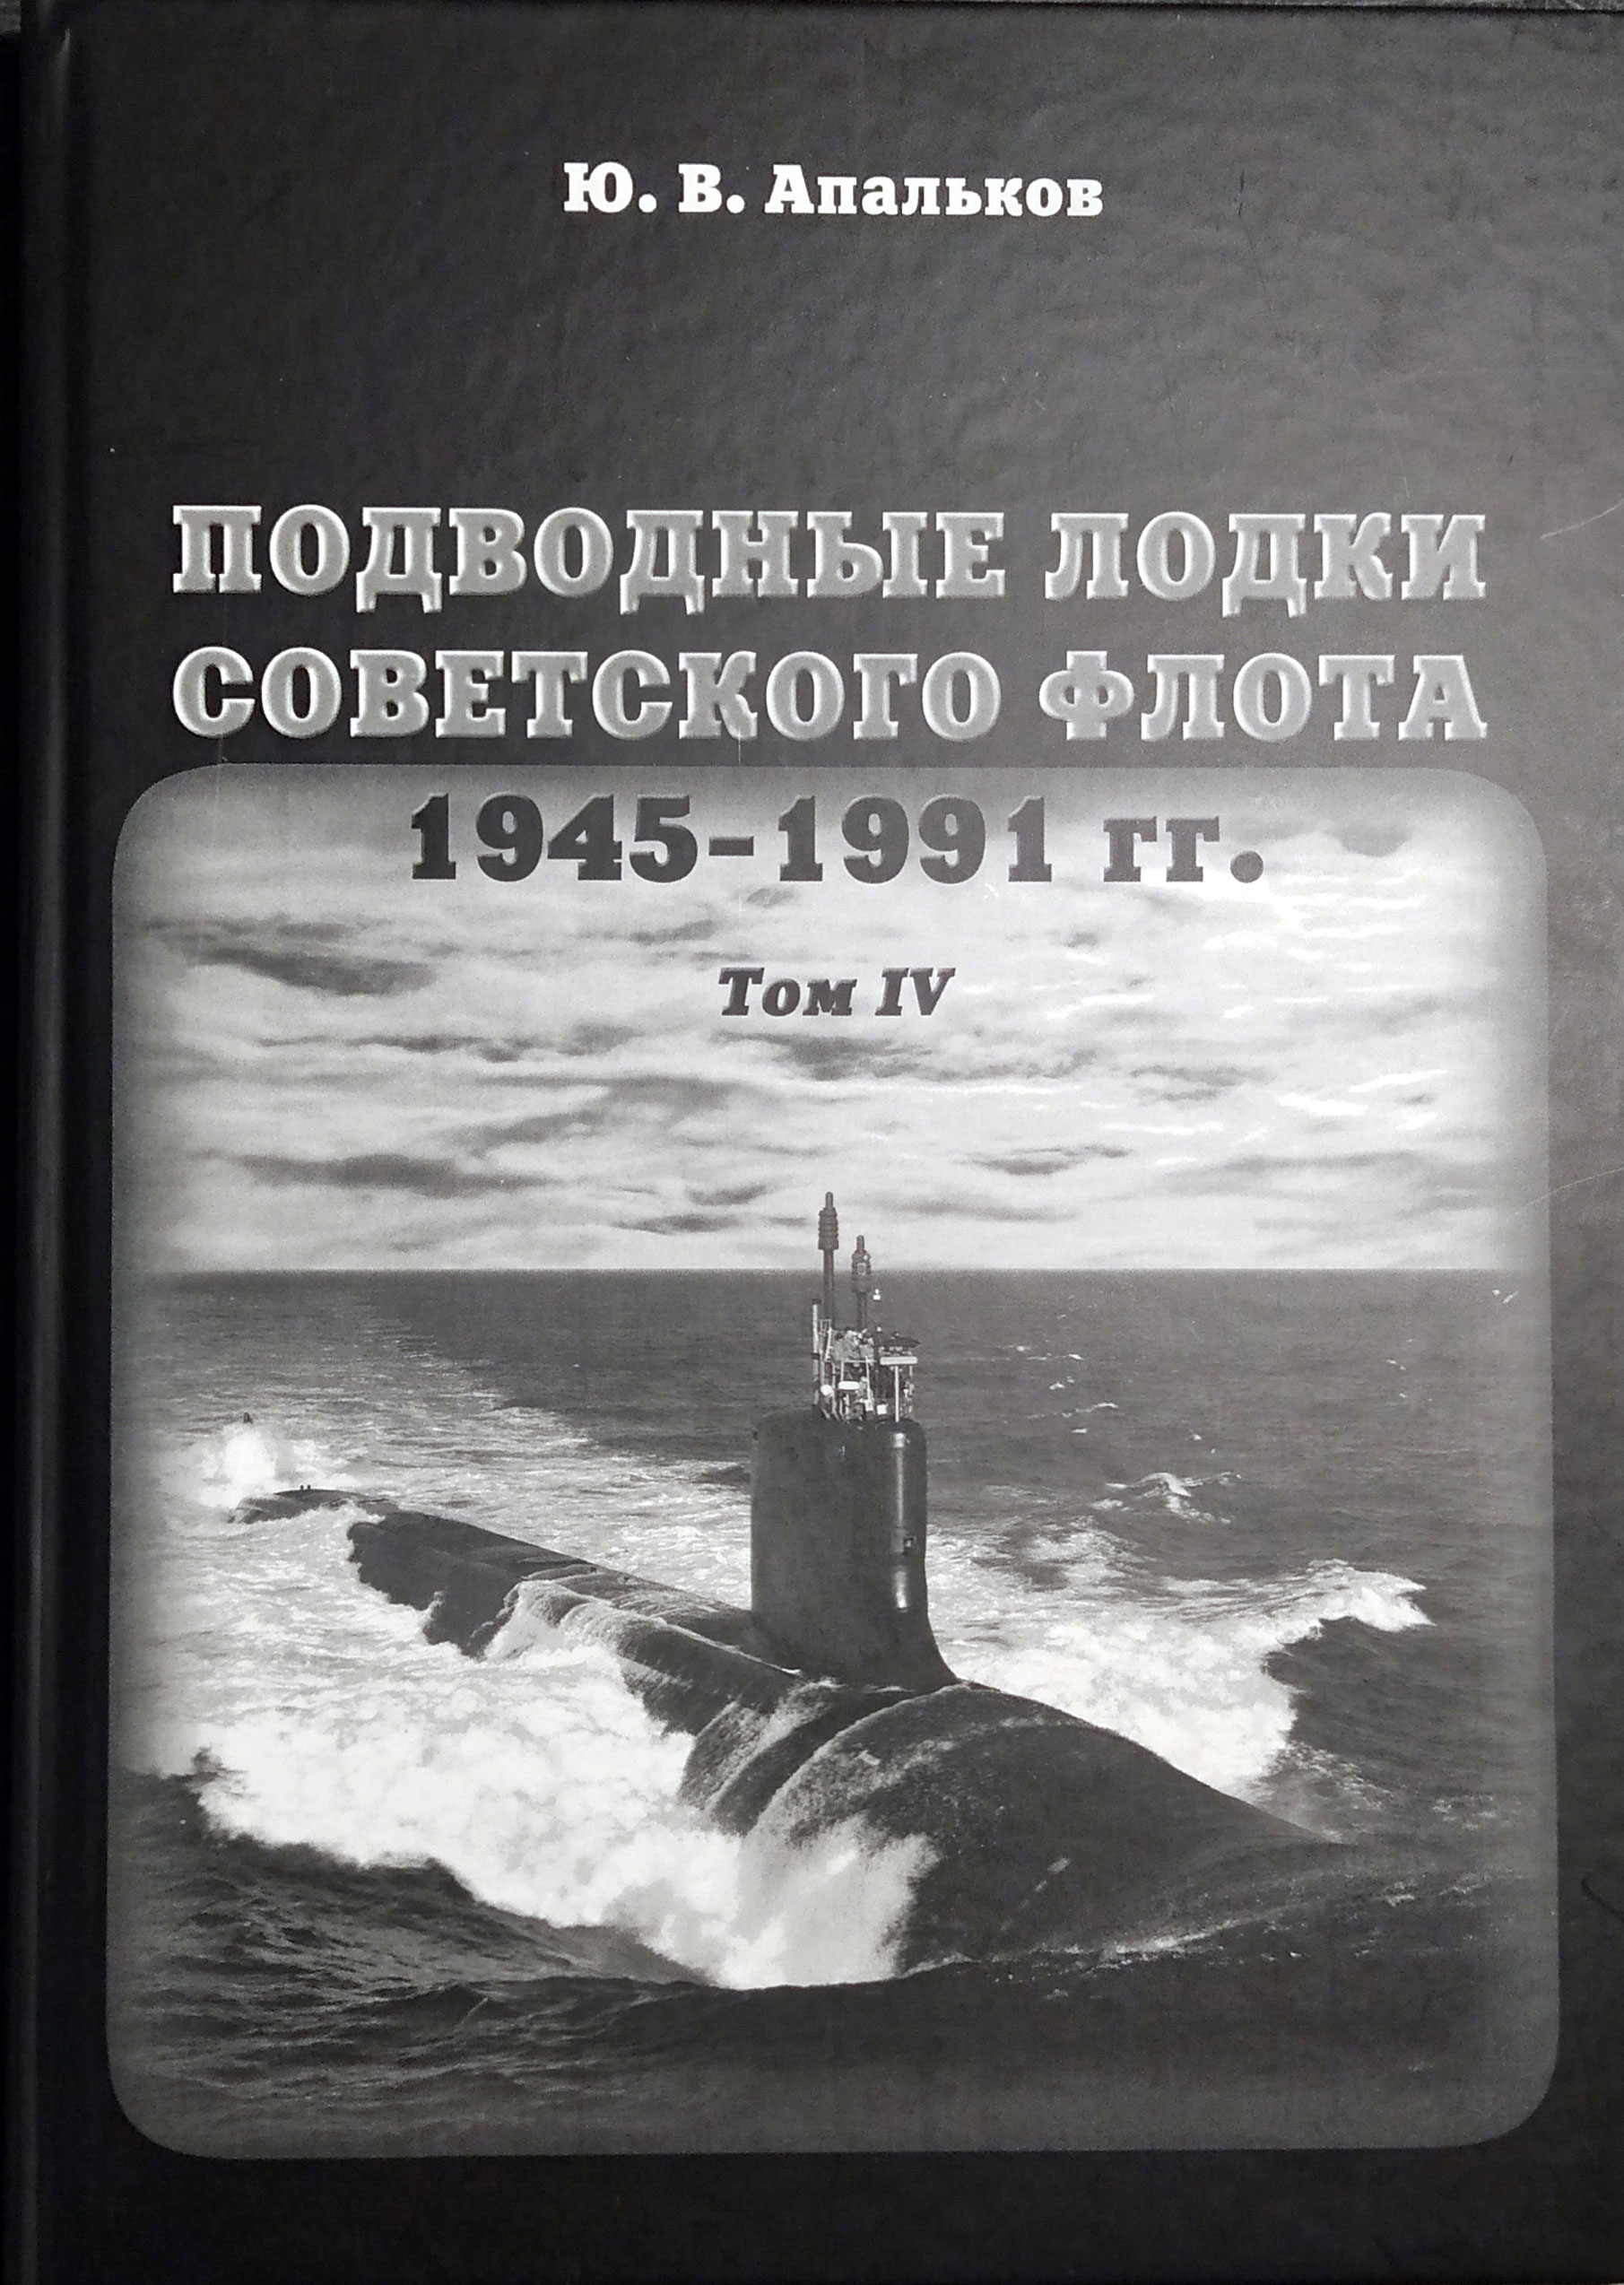     1945-1991 .  4